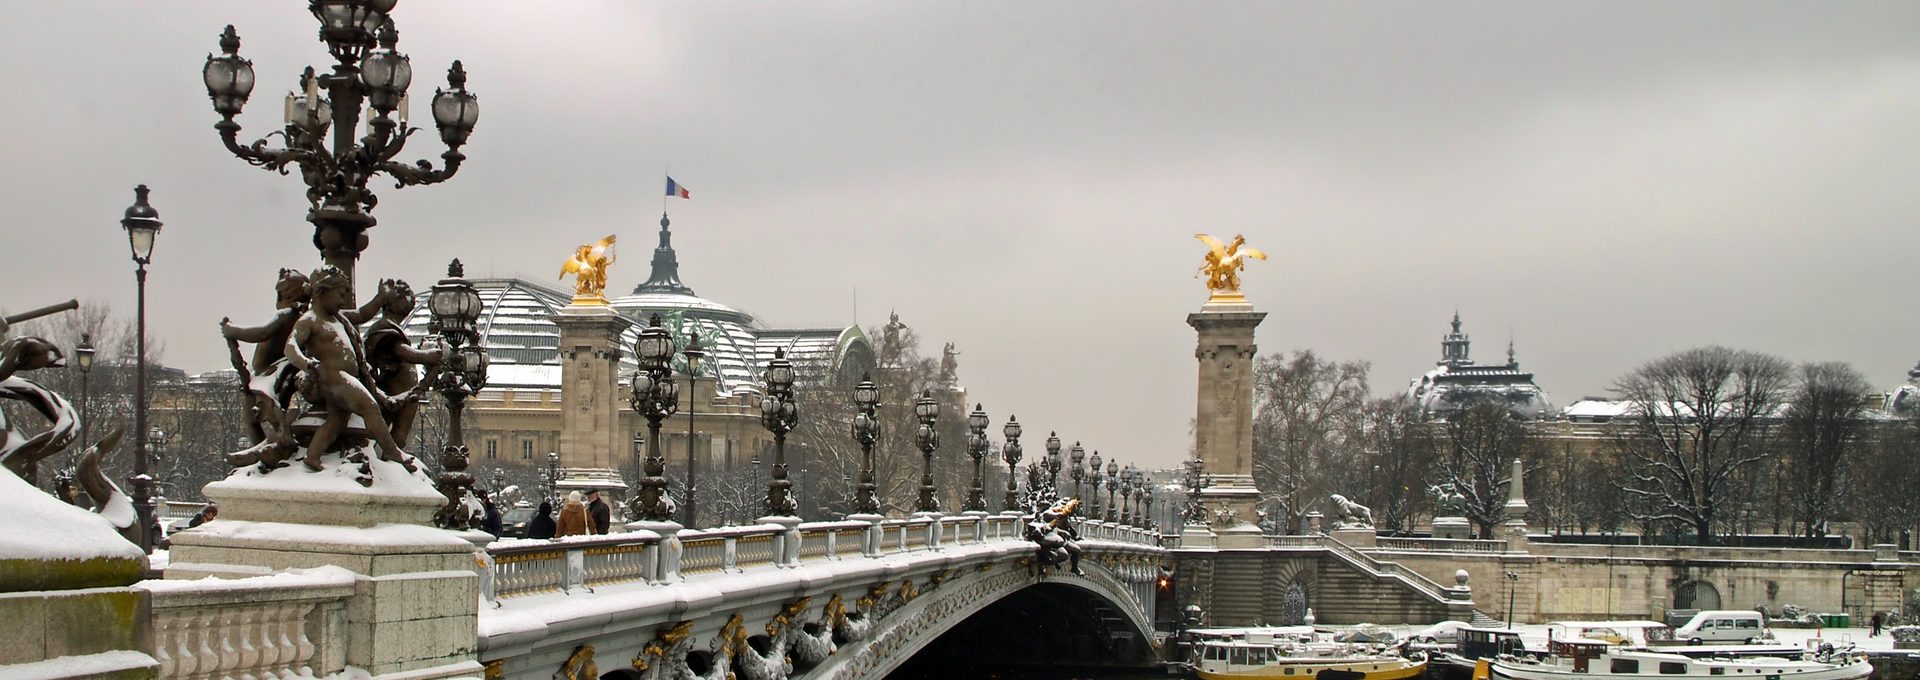 Pont Alexandre LII no inverno em Paris